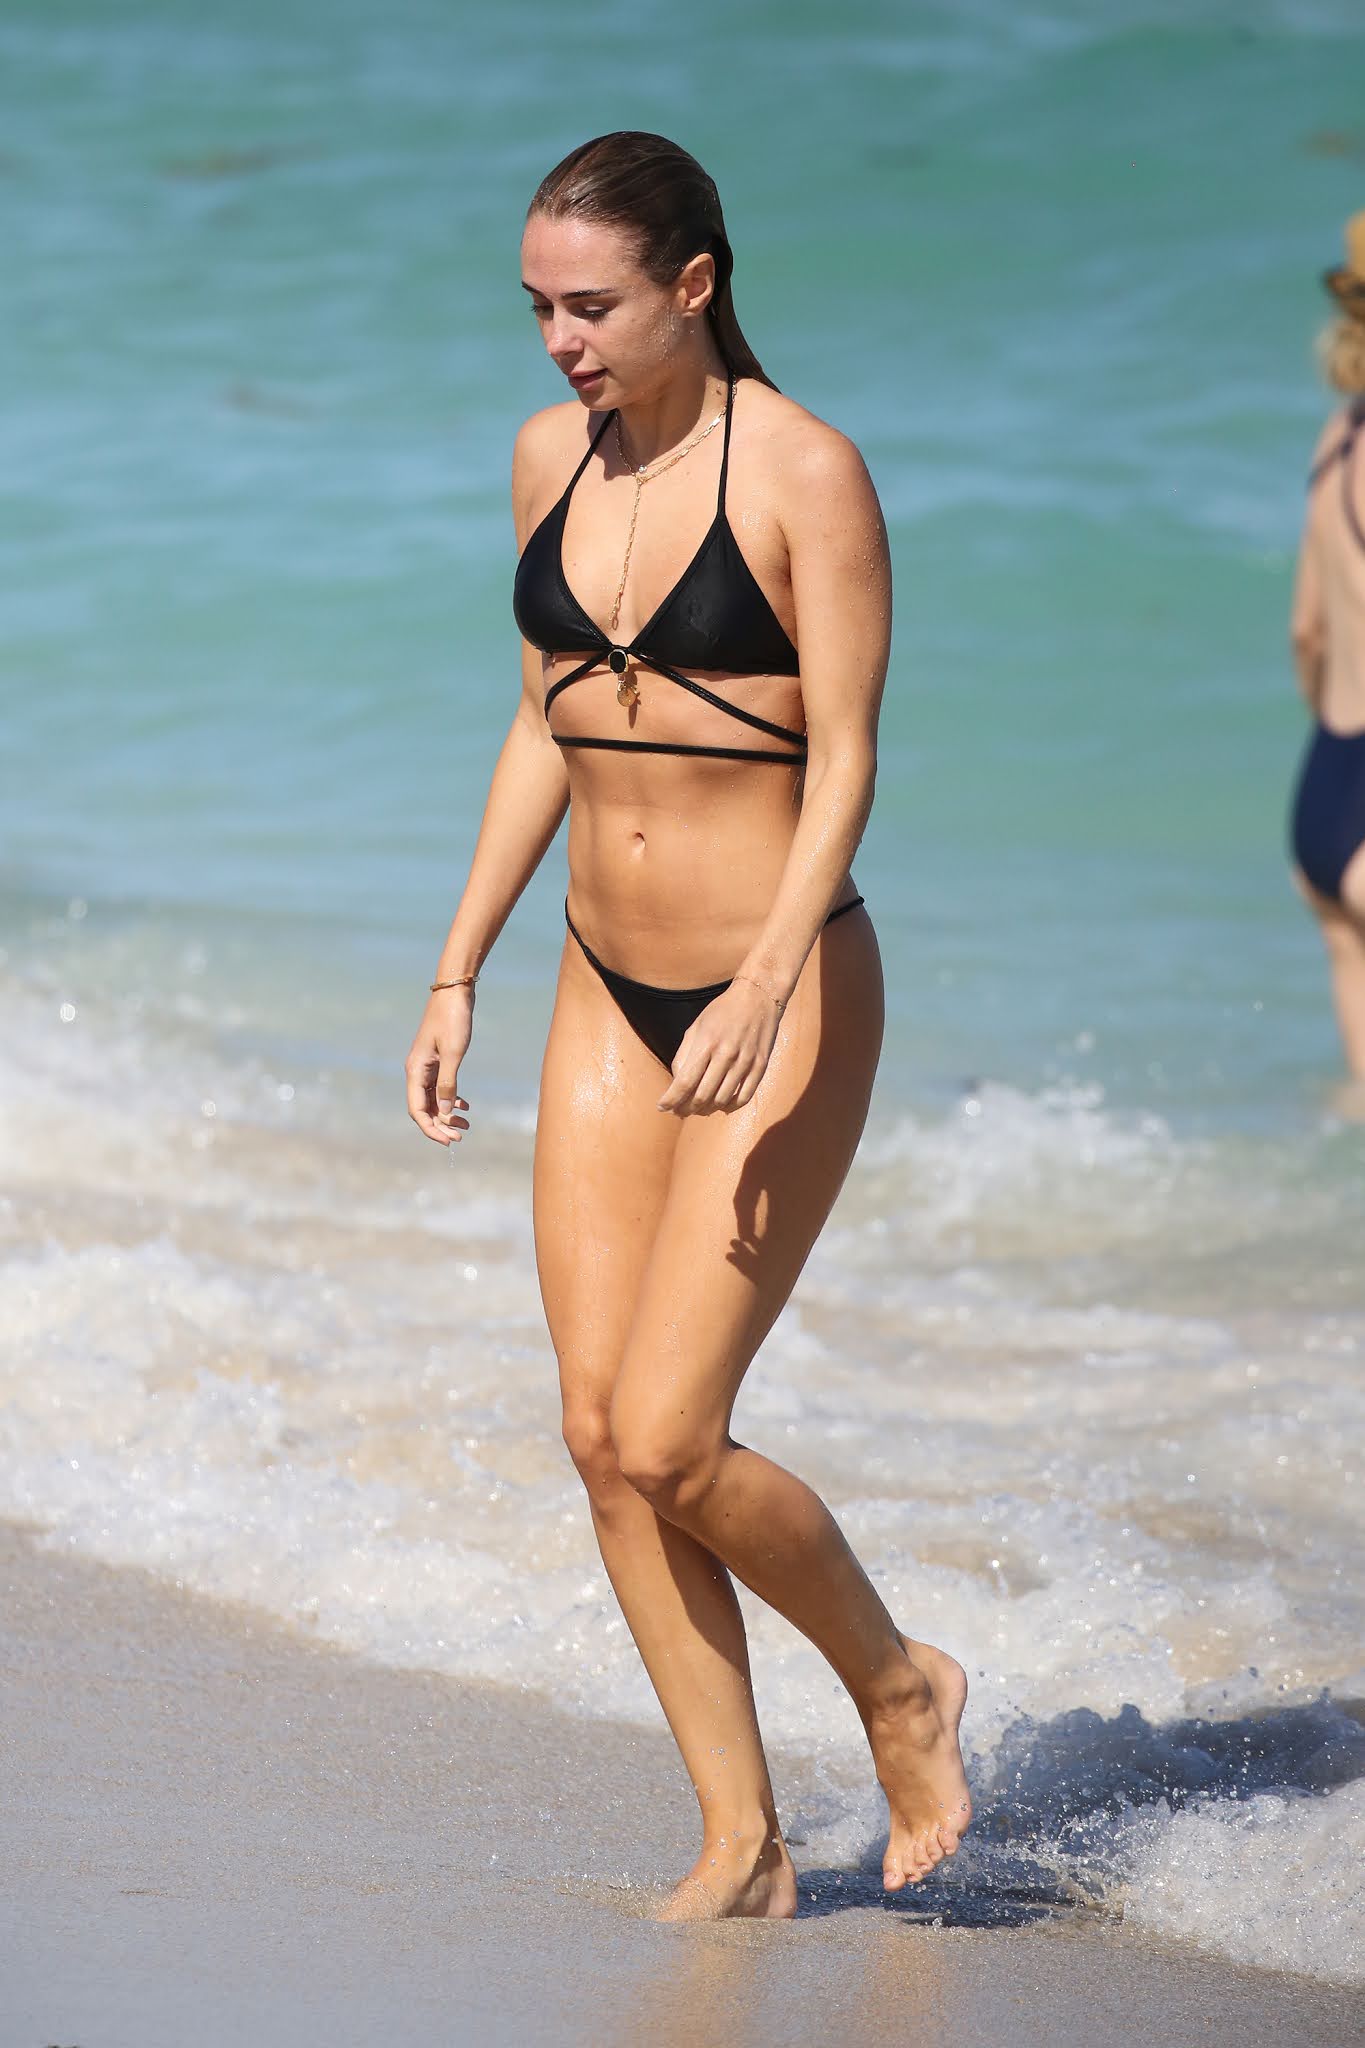 Kimberley Garner displays her incredible figure in a black bikini on the beach in Miami